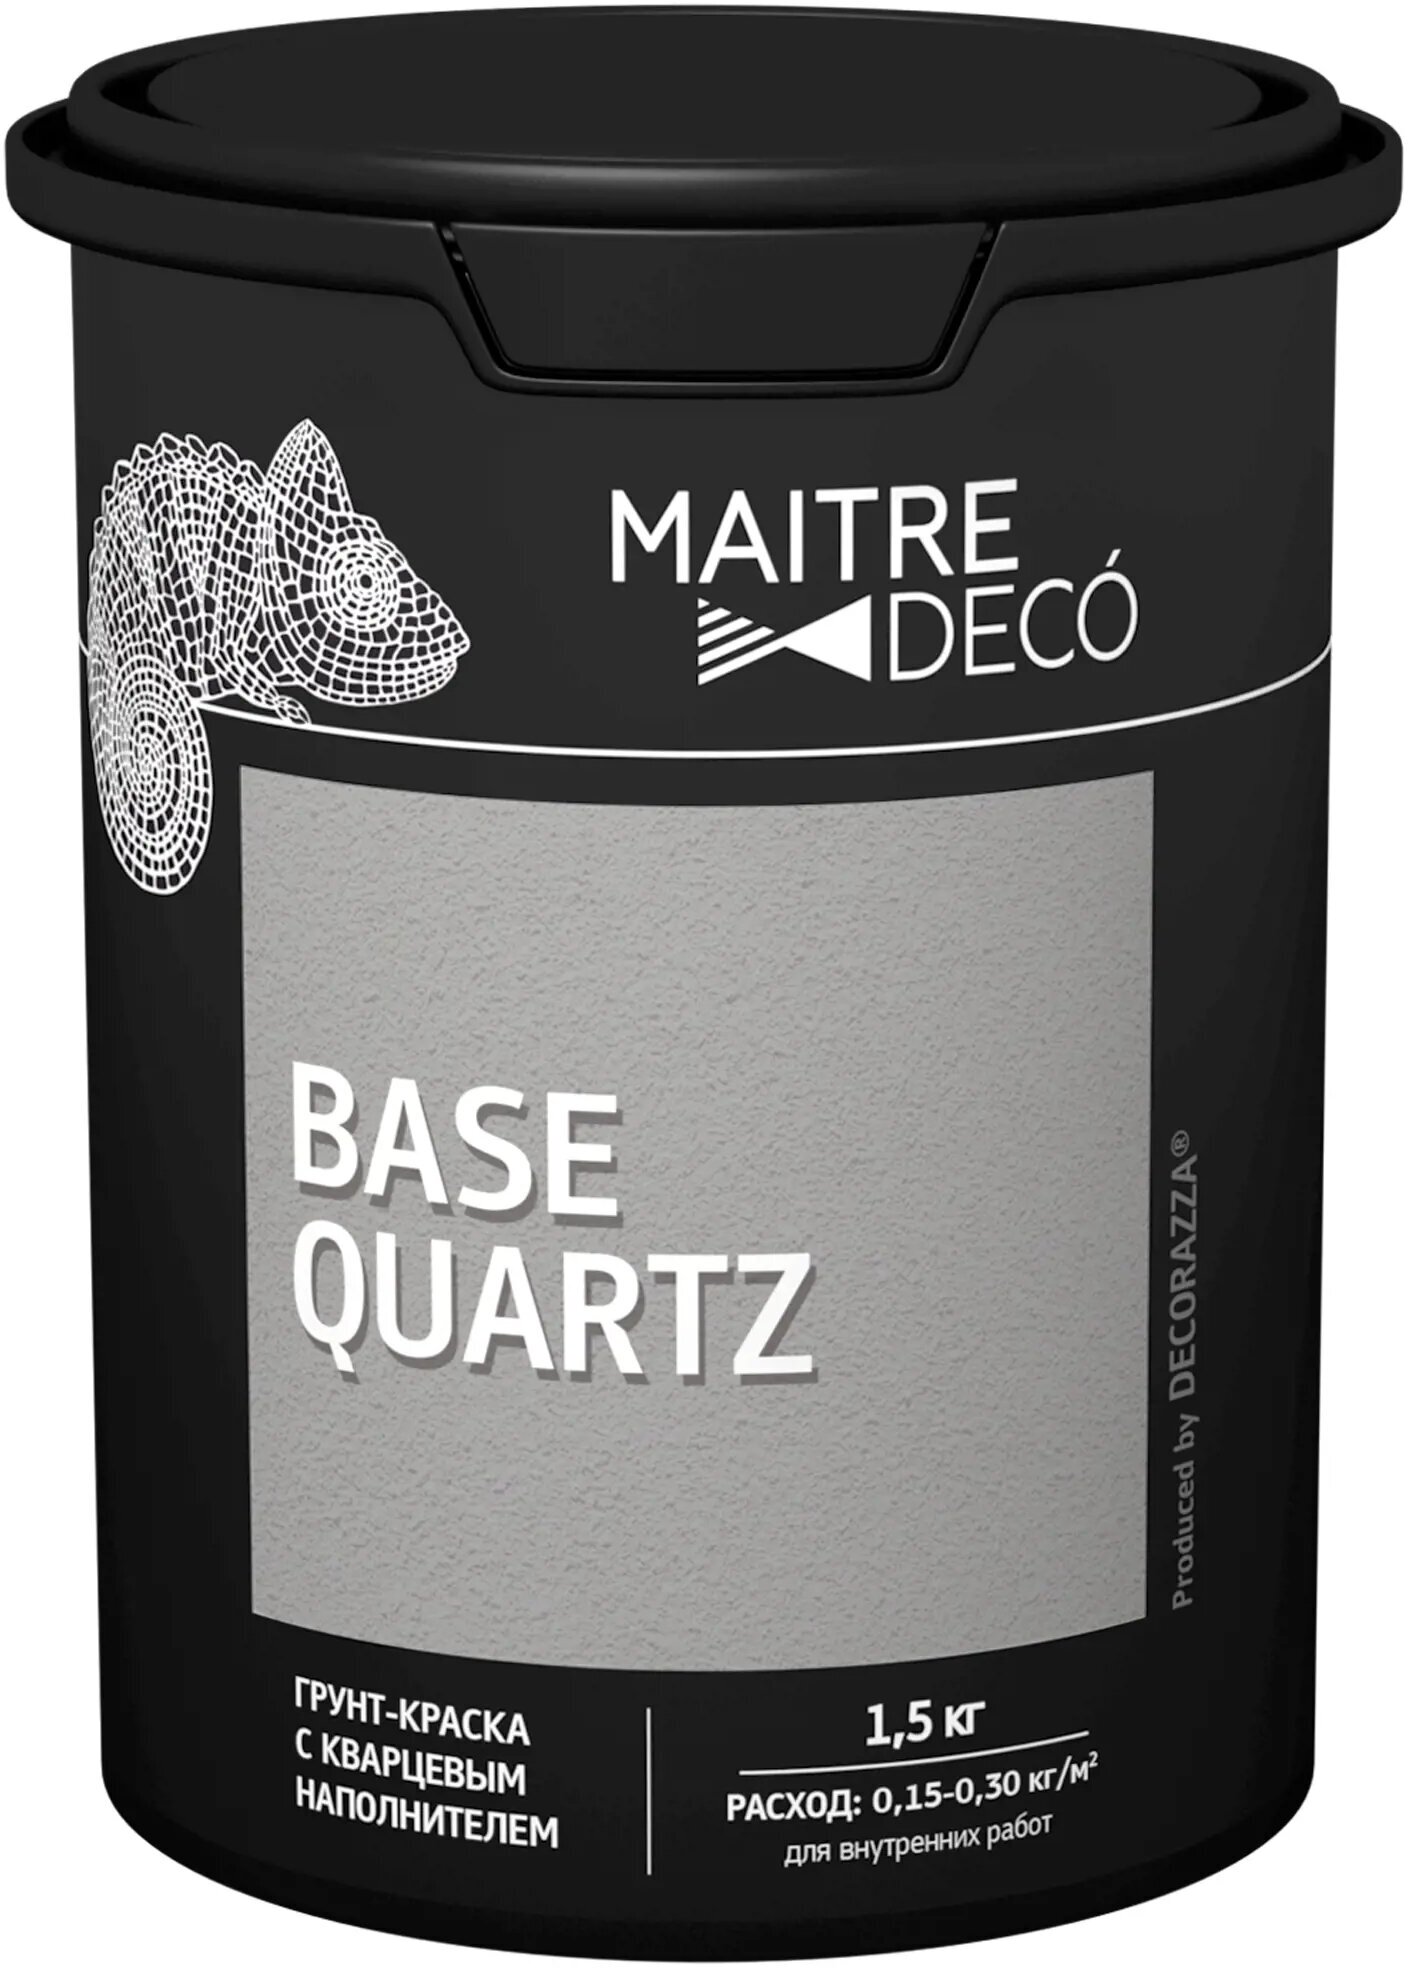 Грунт-краска Maitre Deco «Base Quartz» 1.5 кг